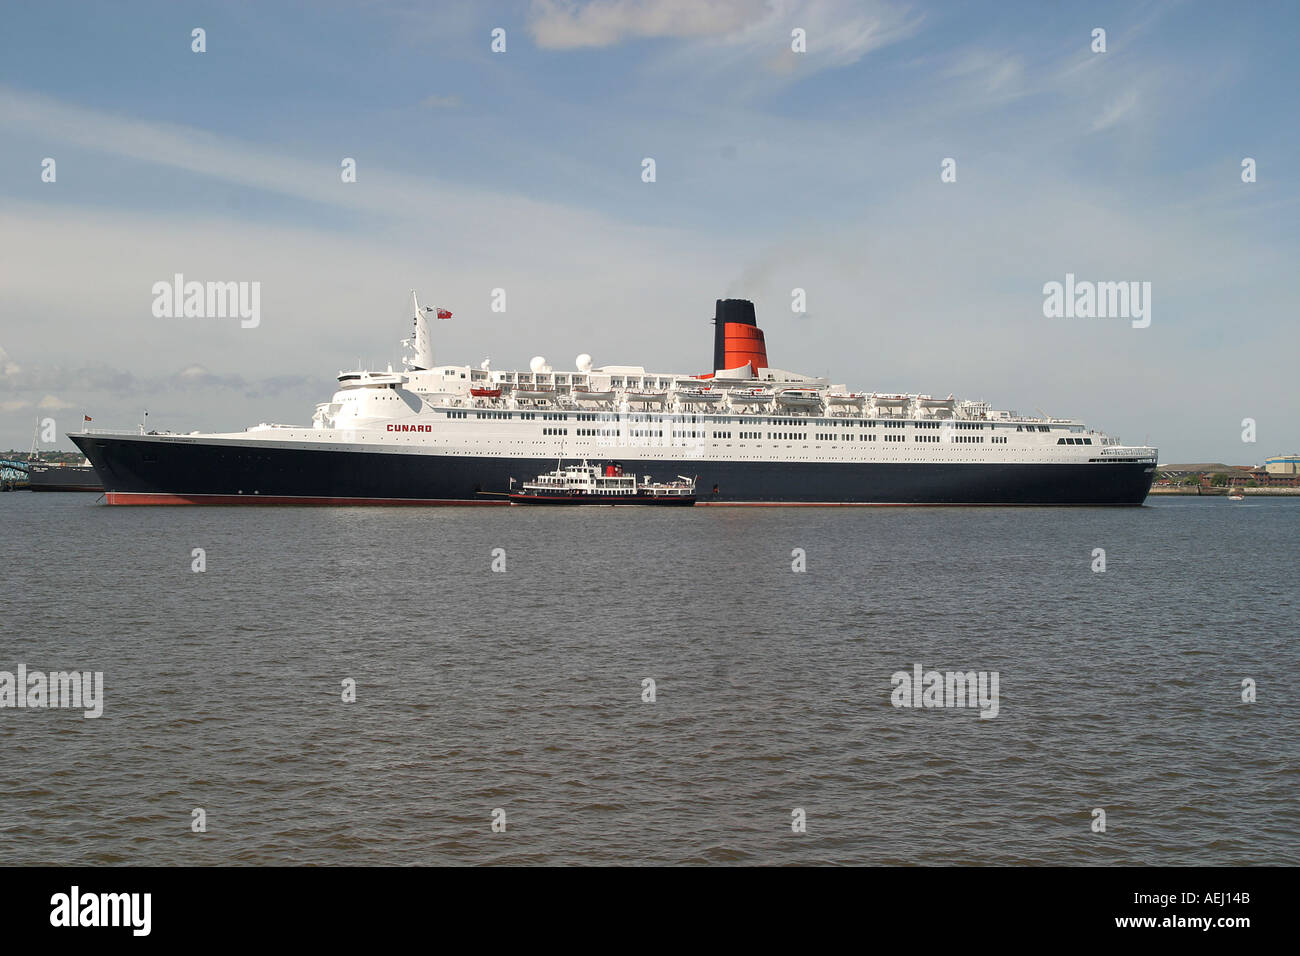 Le navire de croisière Queen Elizabeth II photographié sur la Mersey Liverpool avec la ville en arrière-plan Banque D'Images